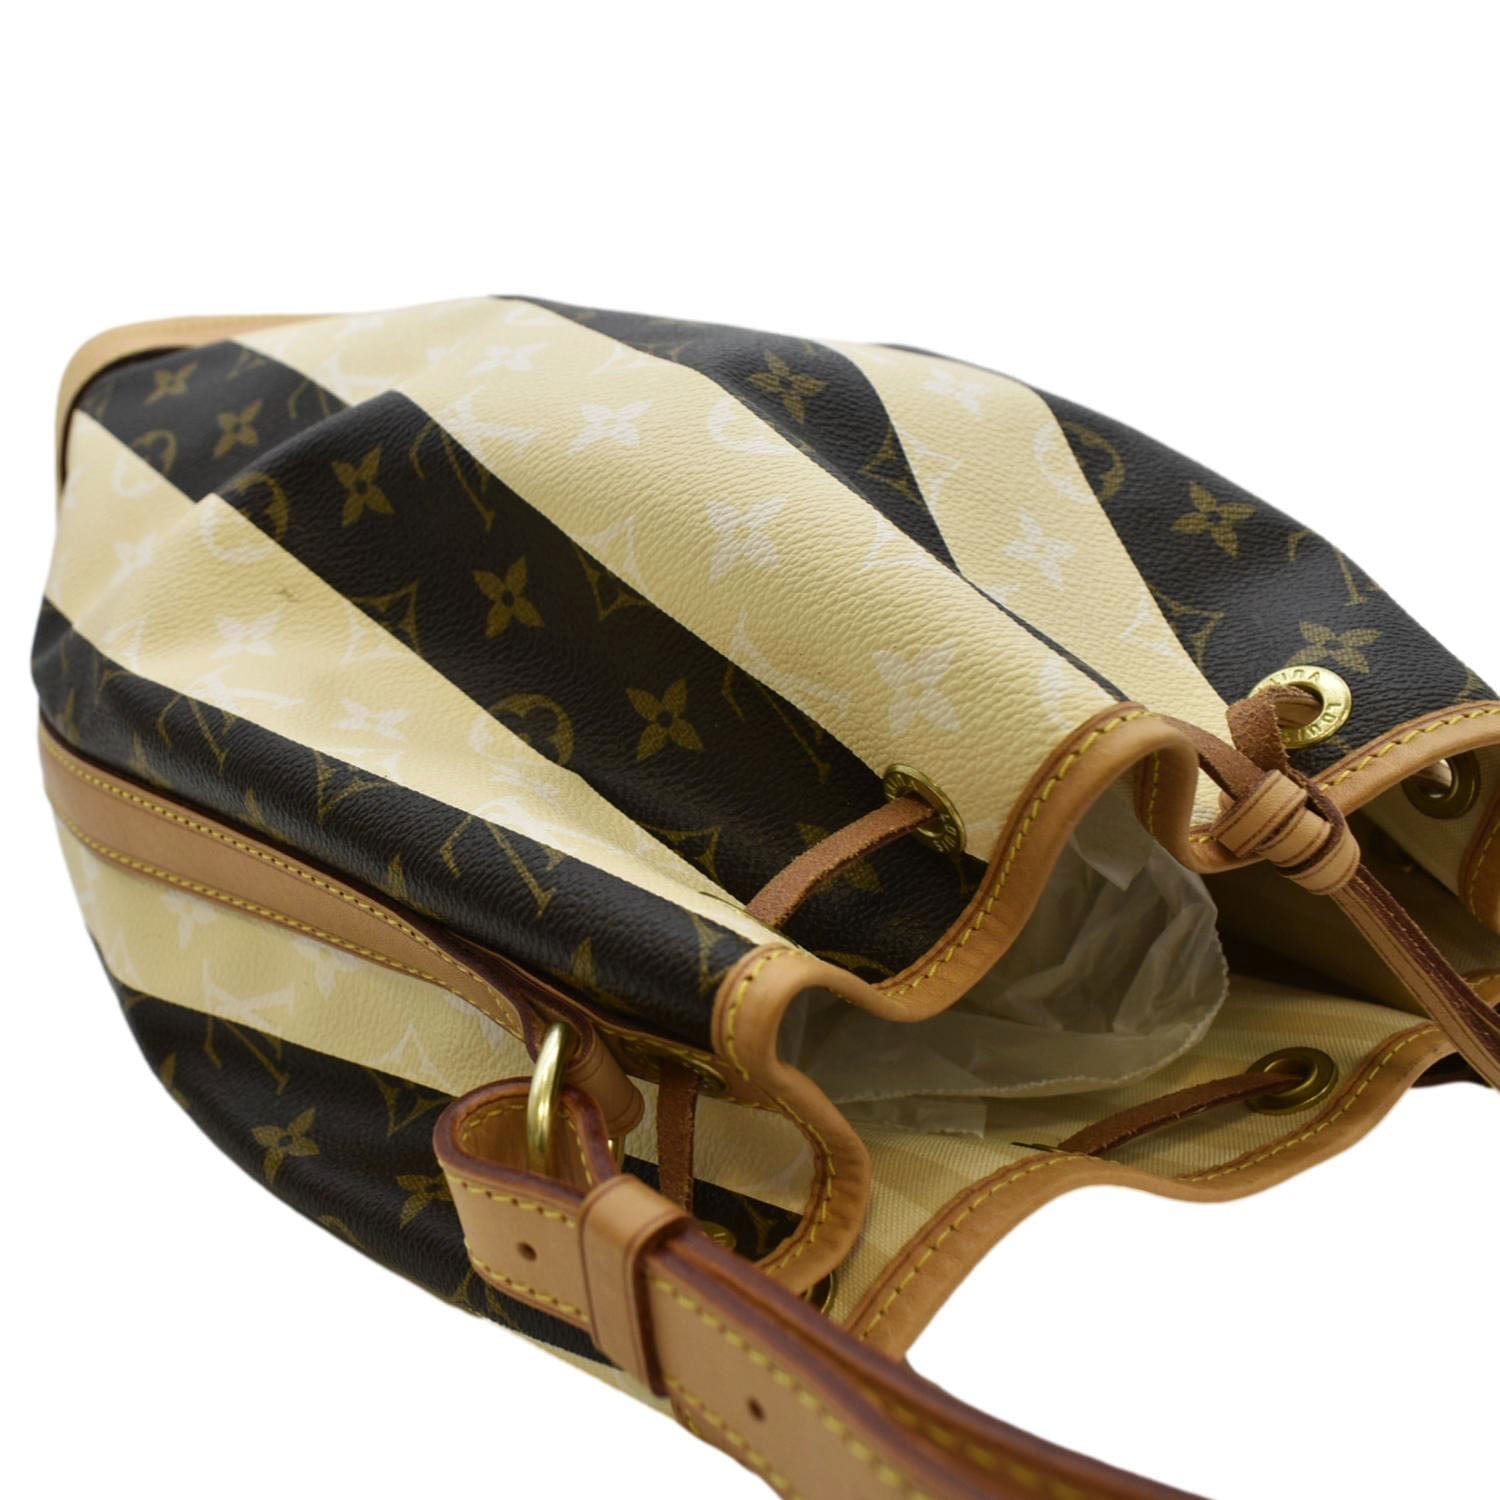 Louis Vuitton Noe Bag